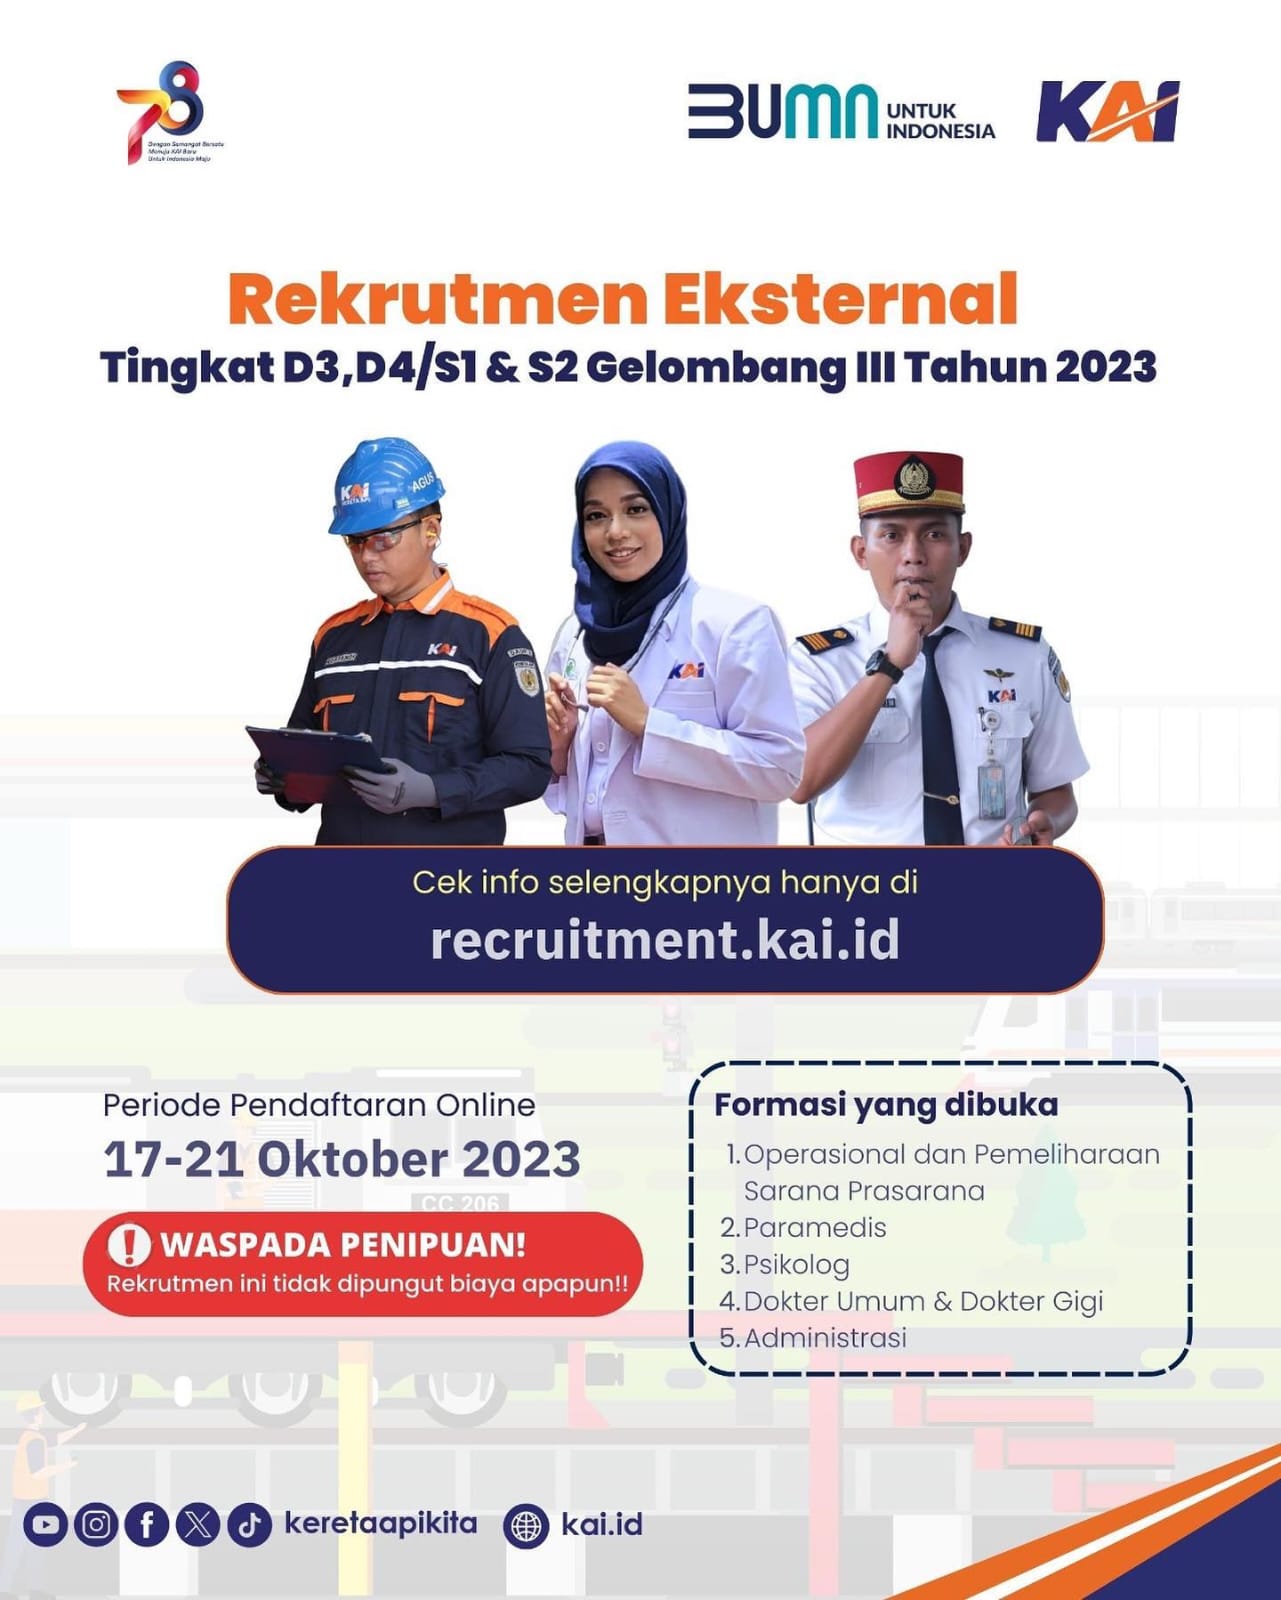 External Recruitment for D3, D4/S1 & S2 Levels Batch III in 2023